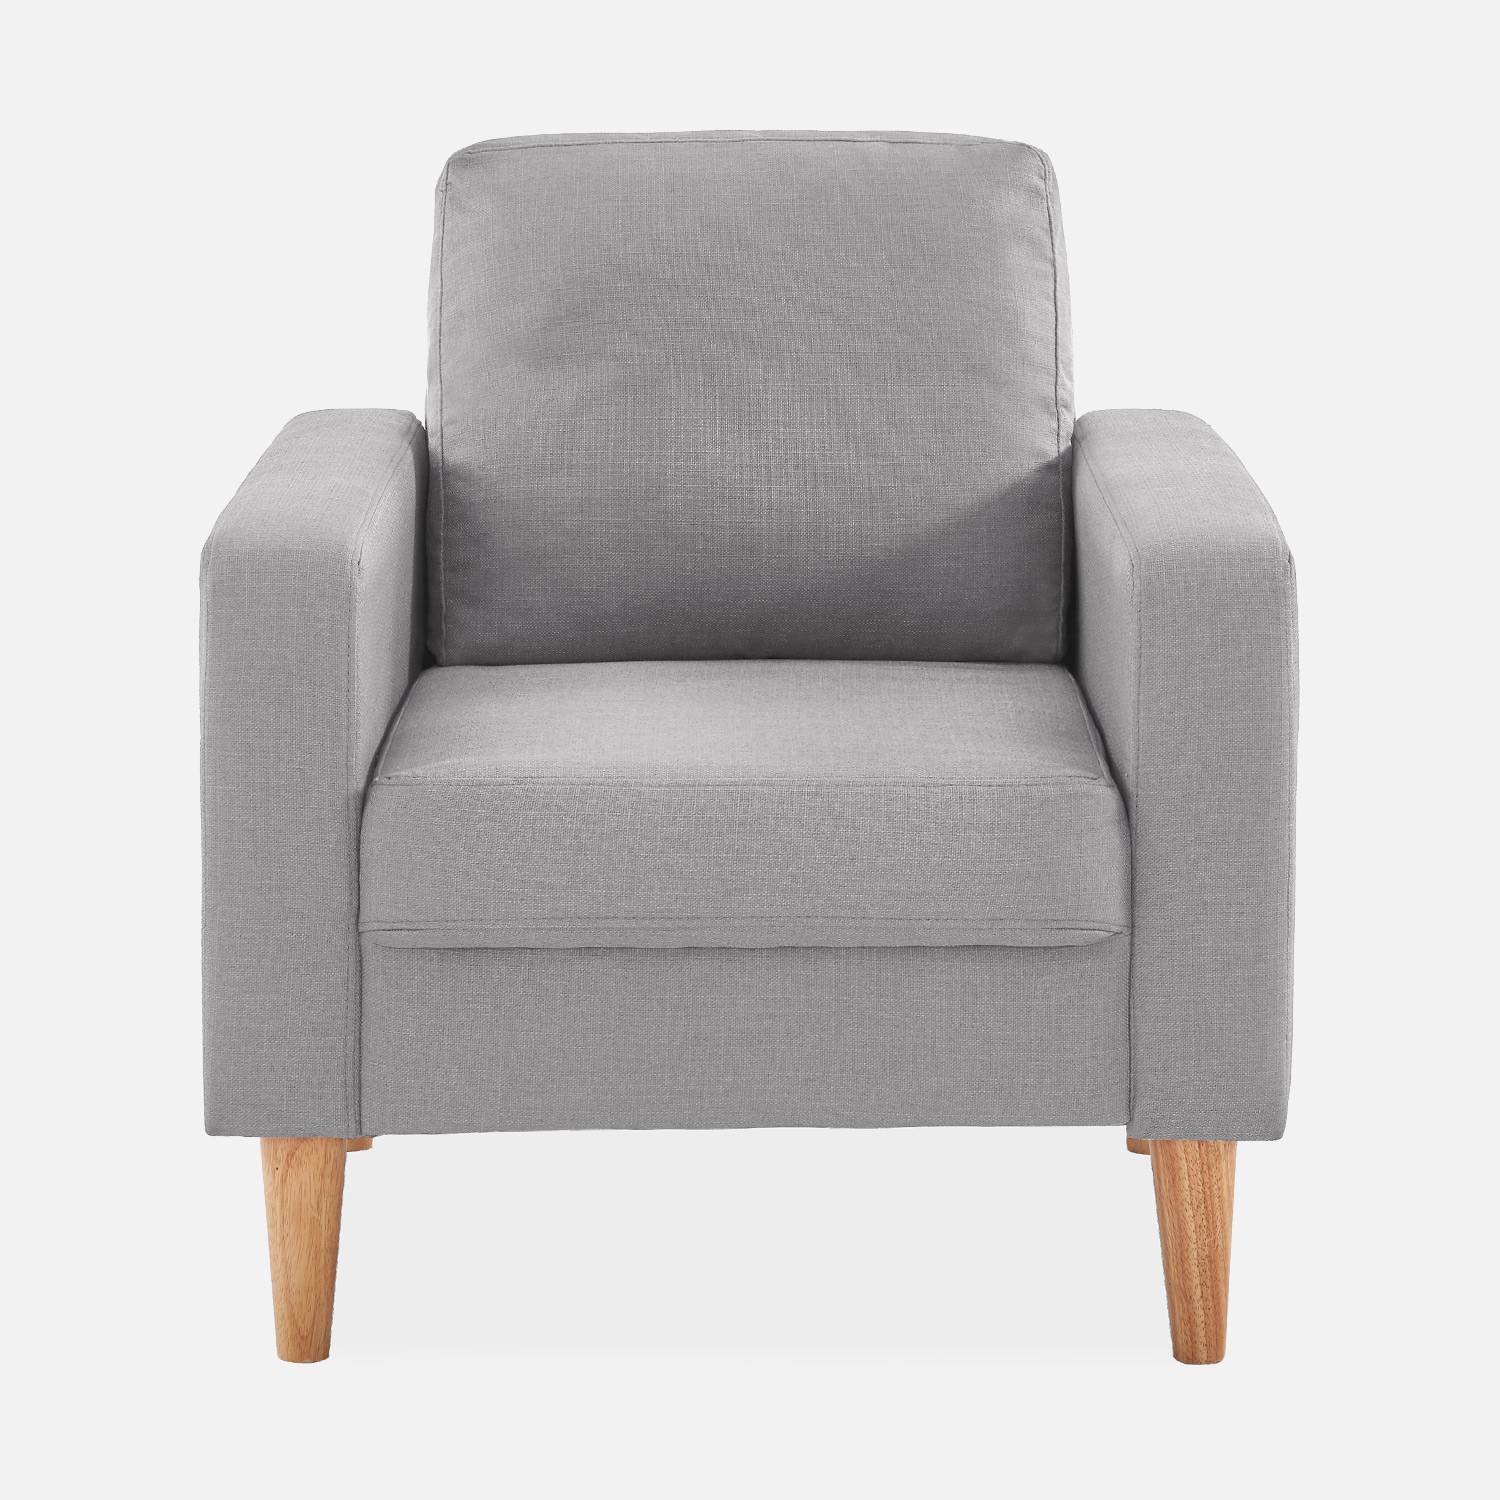 Sillón de tela gris claro - Bjorn - Sillón 1 plaza fijo recto patas madera, sillón escandinavo  ,sweeek,Photo3